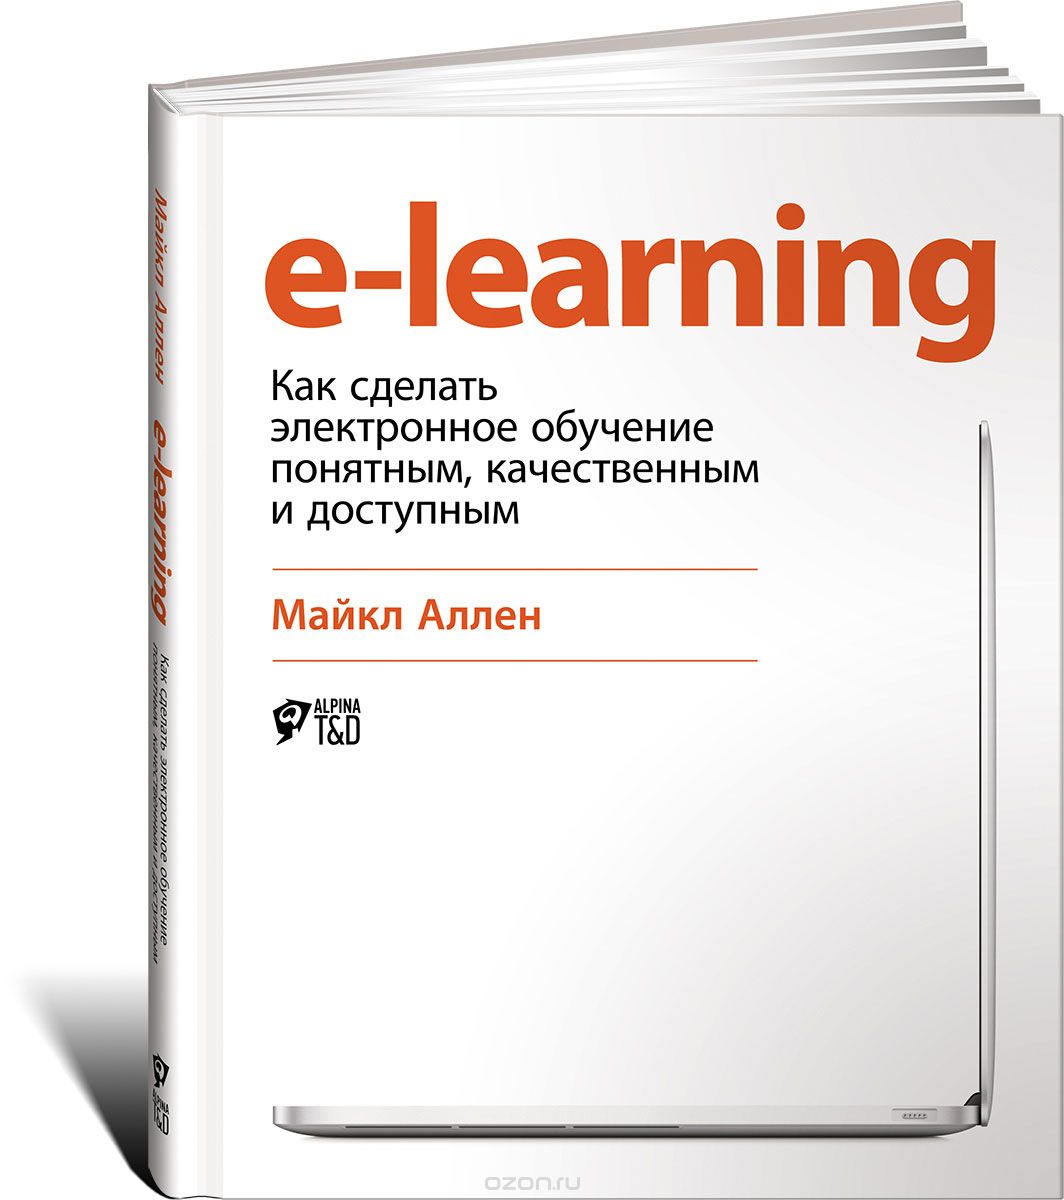 E-Learning: Как сделать электронное обучение понятным,  качественным и доступным